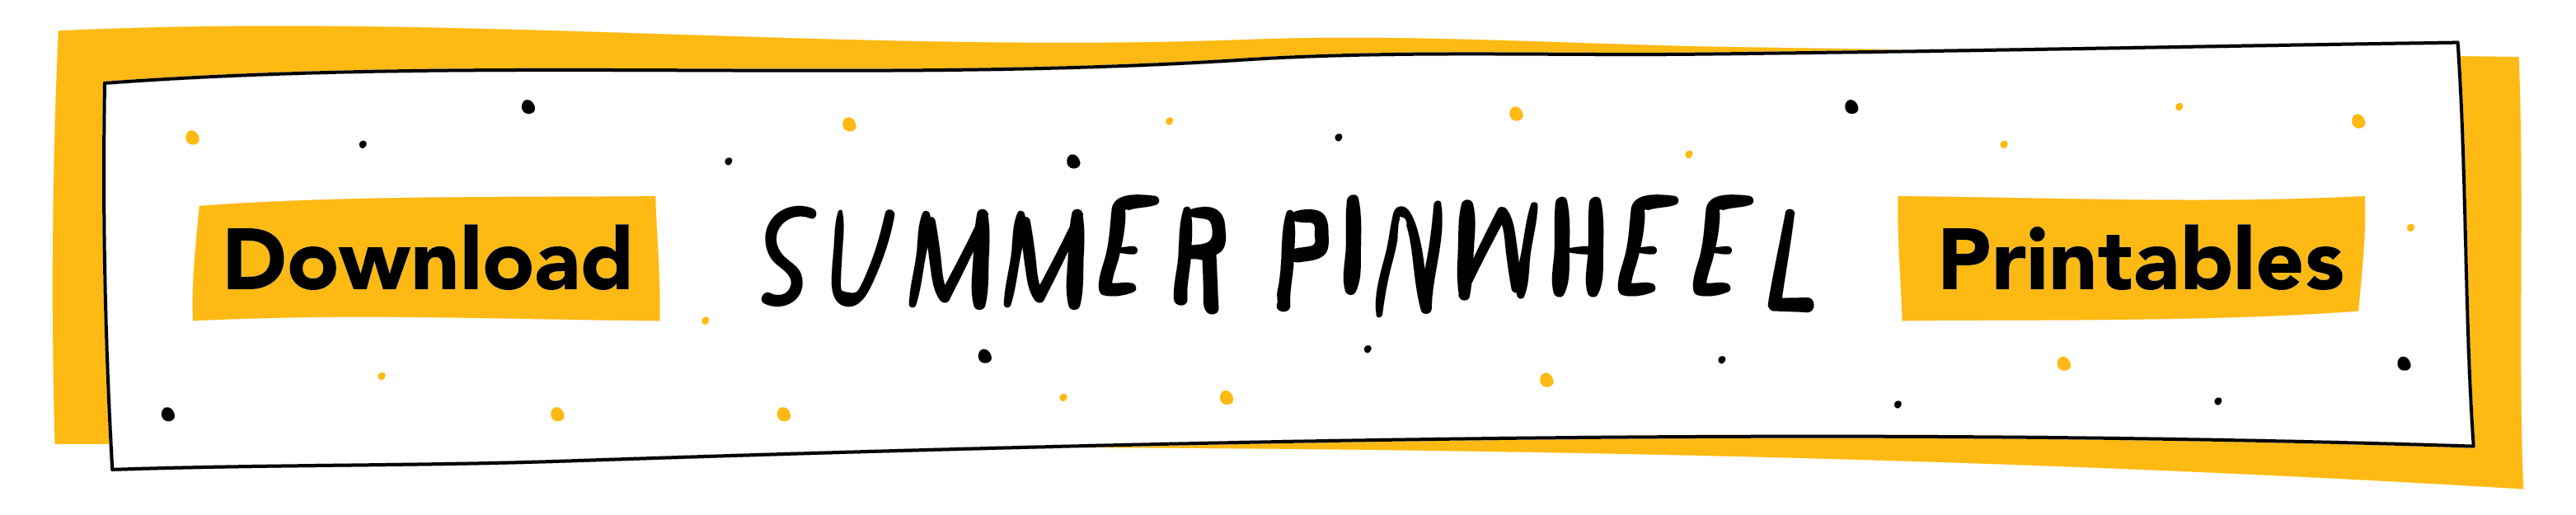 pinwheel-button